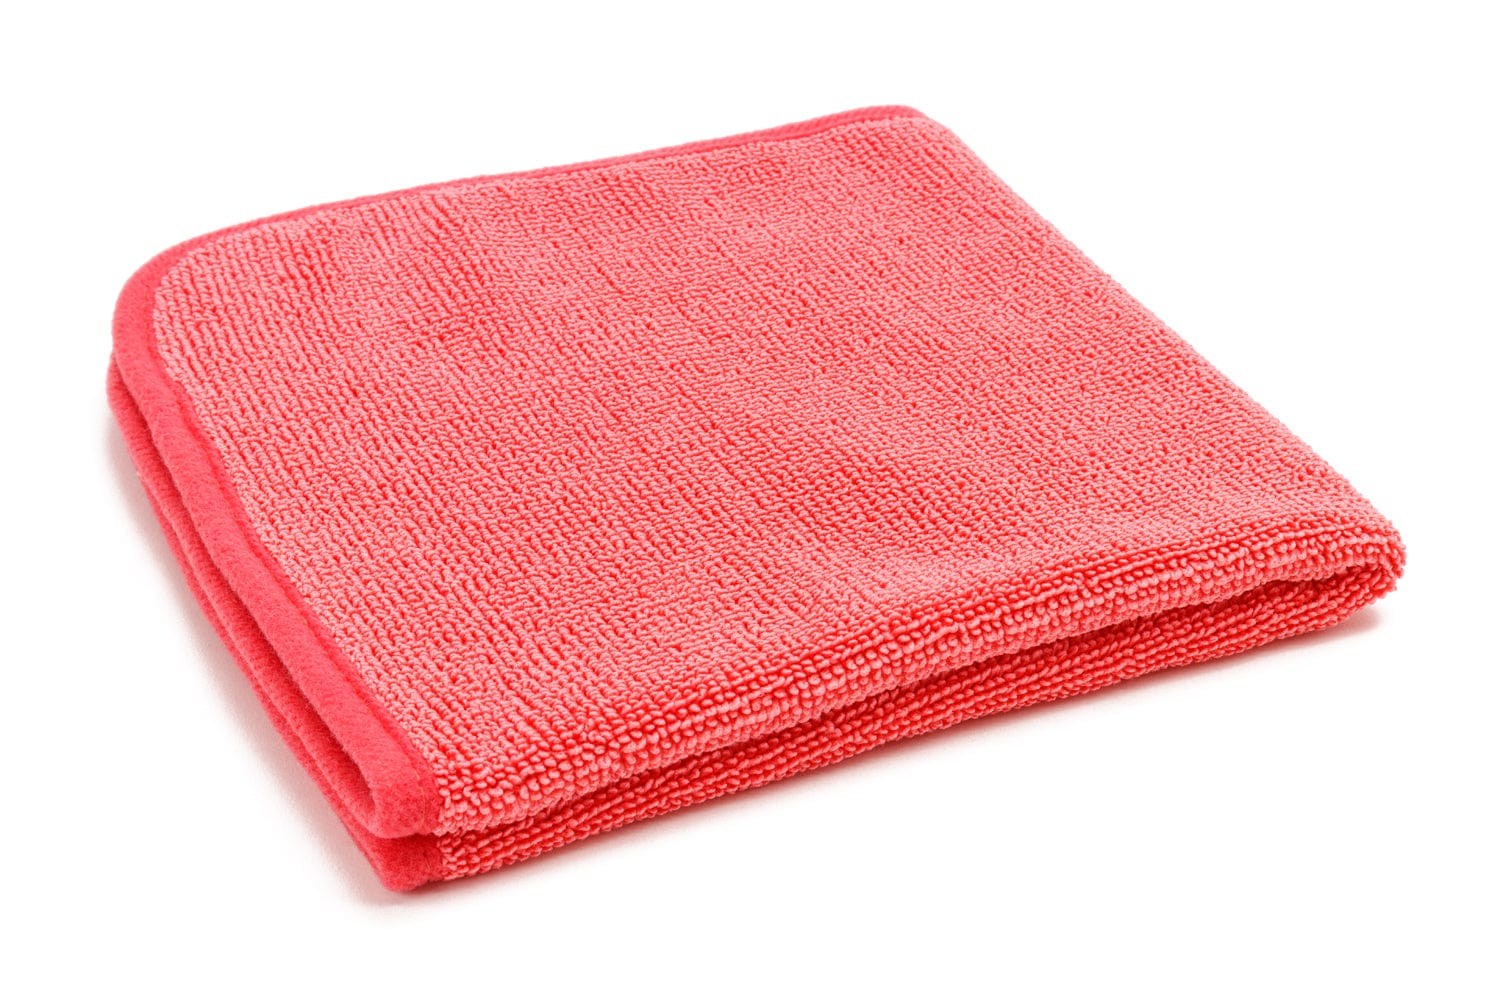 Sniper Microfiber Drying Towel, Car Detailing Towel, Quick & Easy Drying Towel, Made in Korea